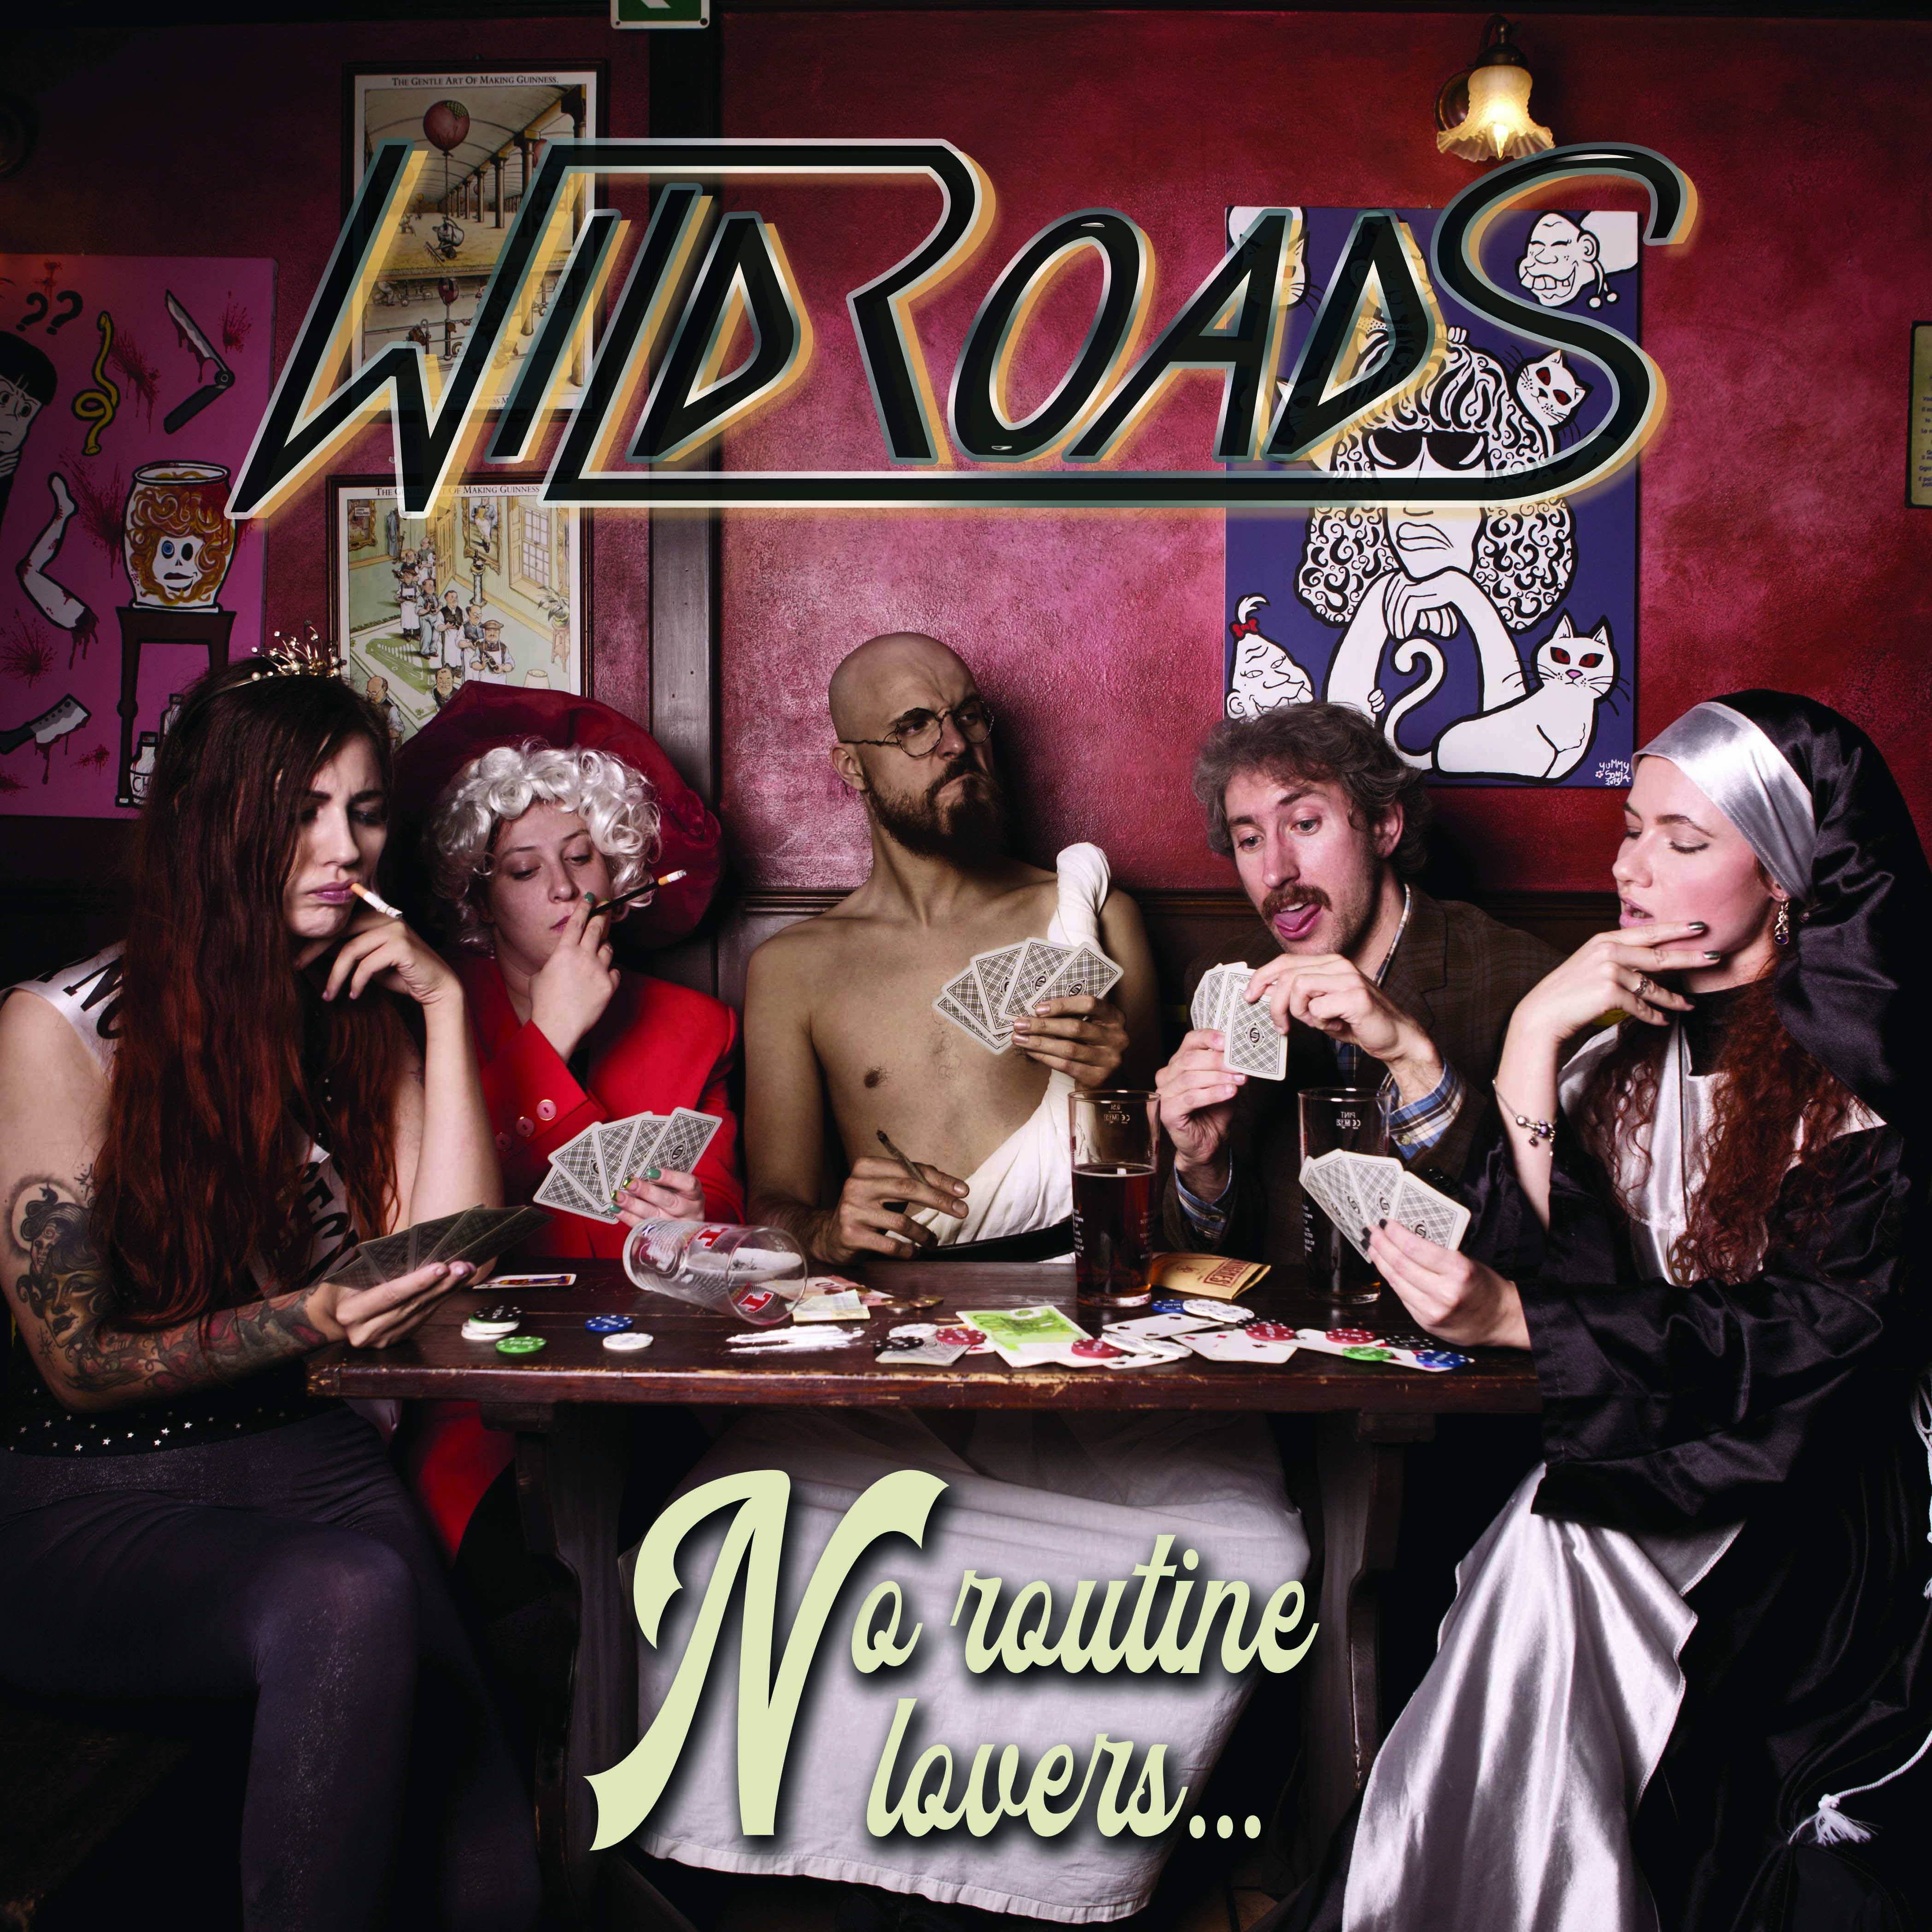 No Routine Lovers, il nuovo disco dei Wildroads